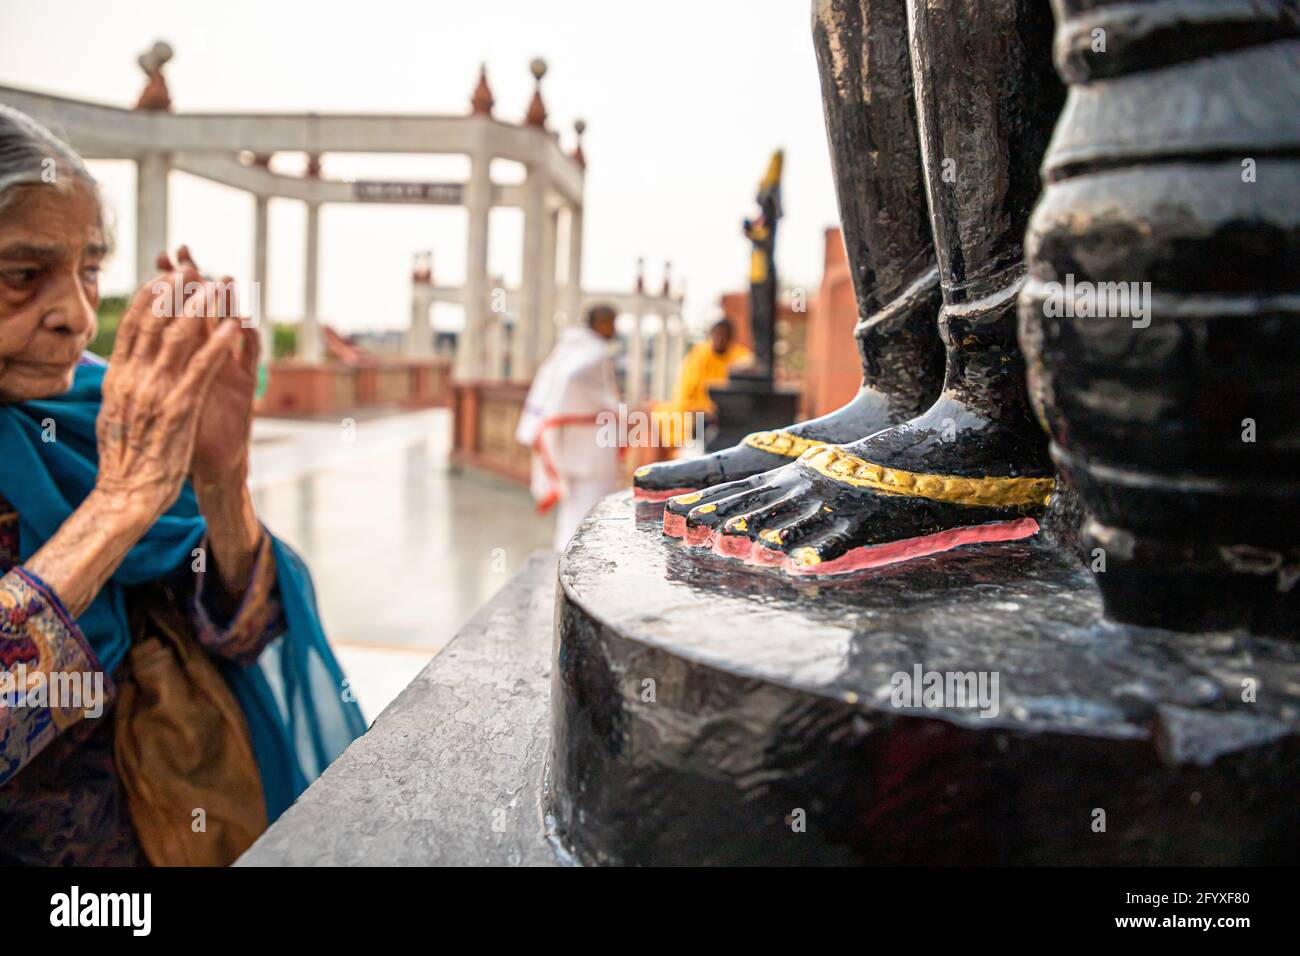 le dévot hindou indien prie devant une idole au temple iskon de delhi. Banque D'Images